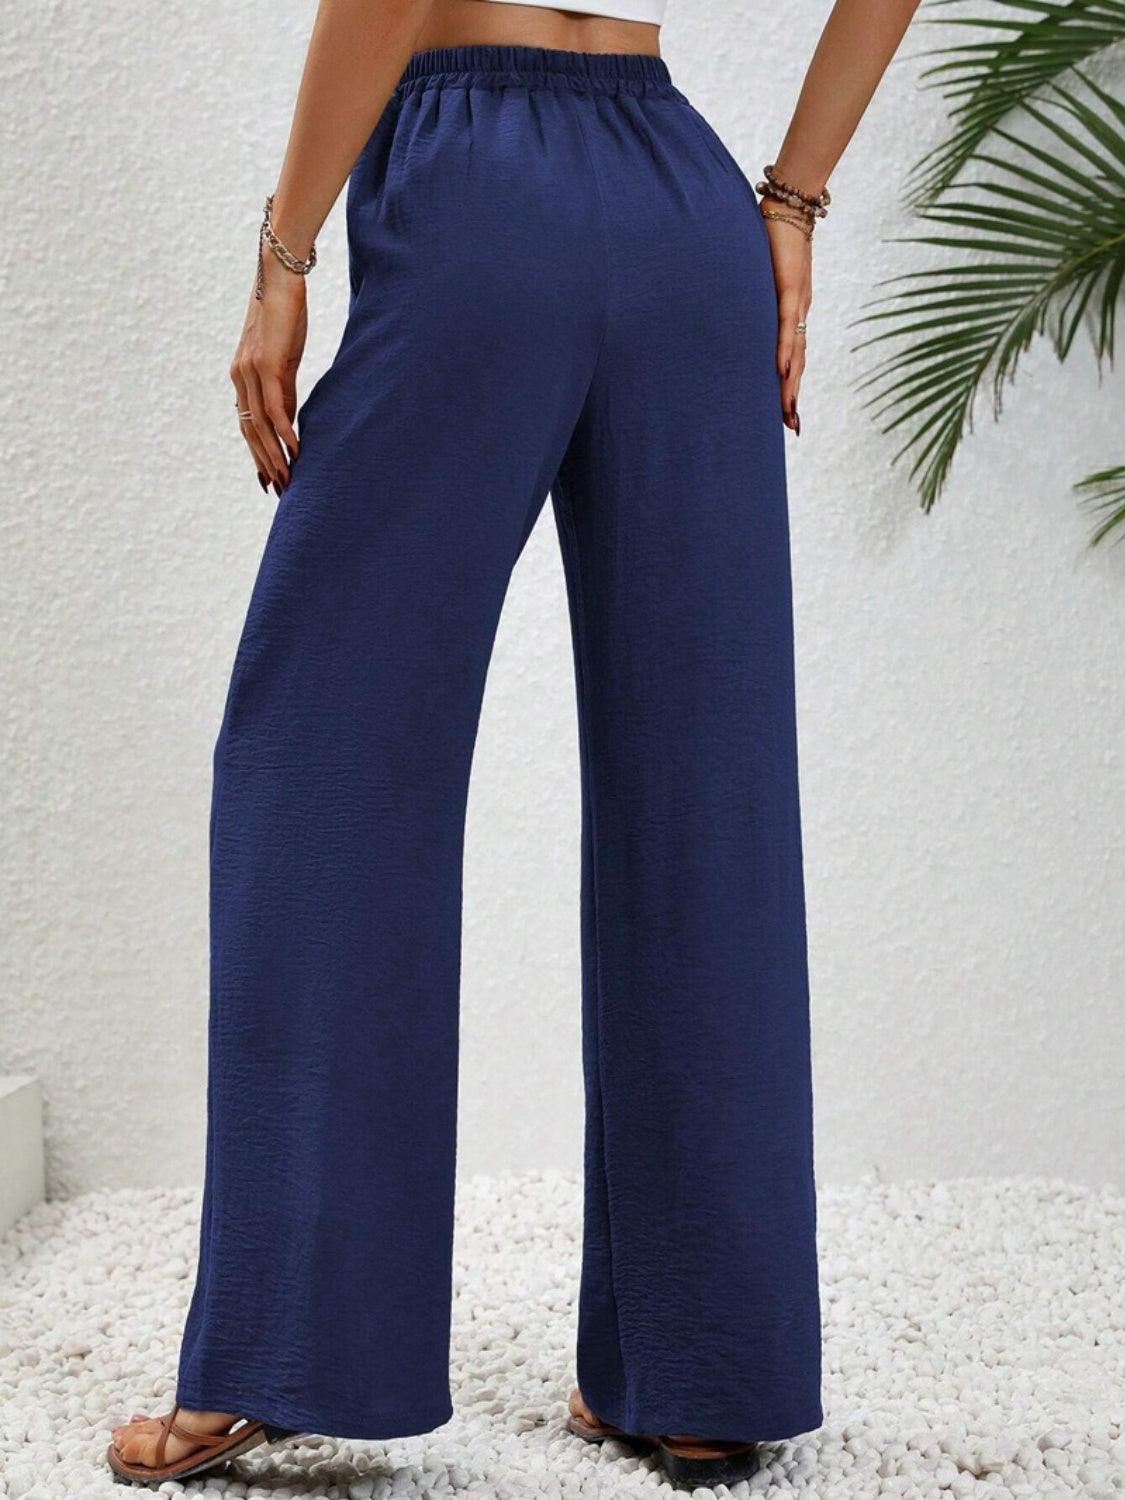 Bona Fide Fashion - Wide Leg Drawstring Pants - Women Fashion - Bona Fide Fashion